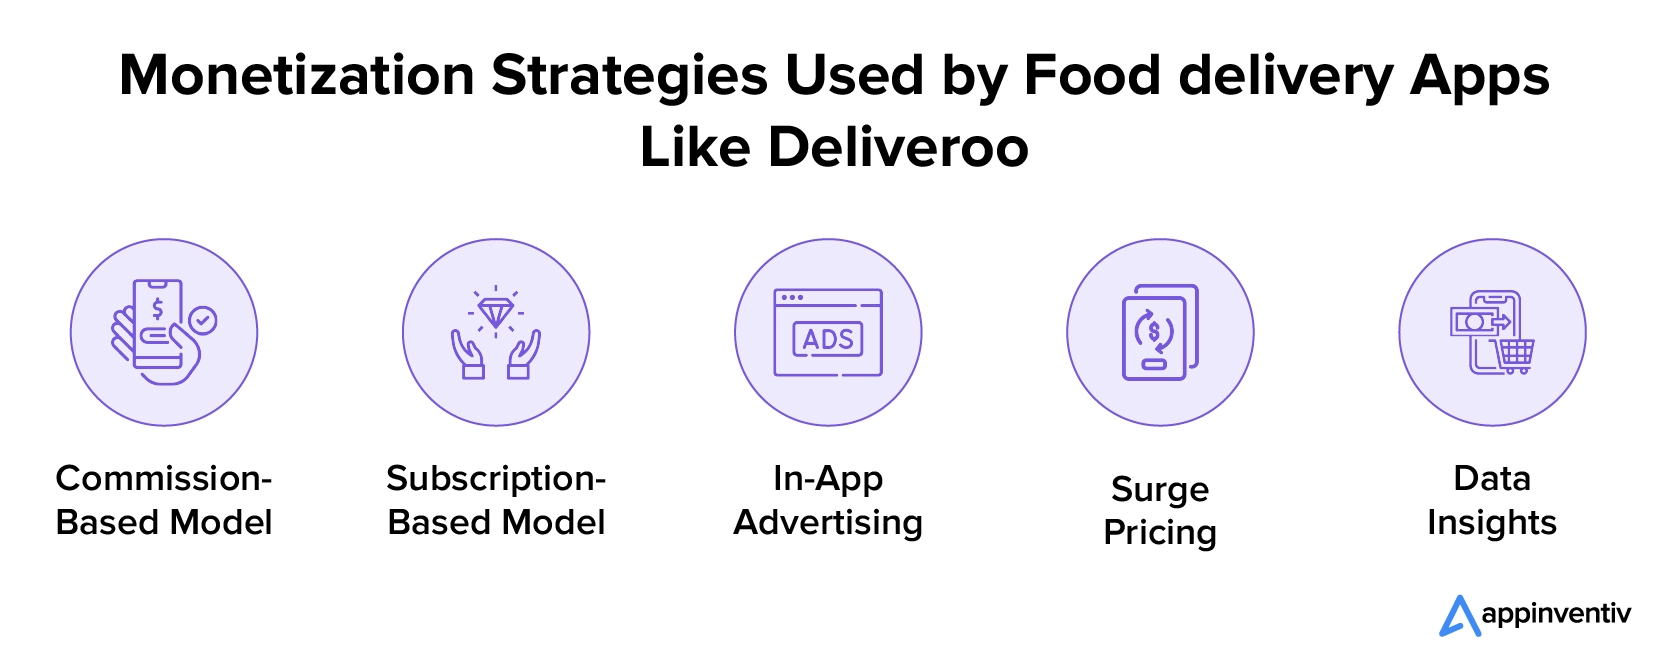 Strategi Monetisasi yang Digunakan oleh Aplikasi Pesan-antar Makanan Seperti Deliveroo